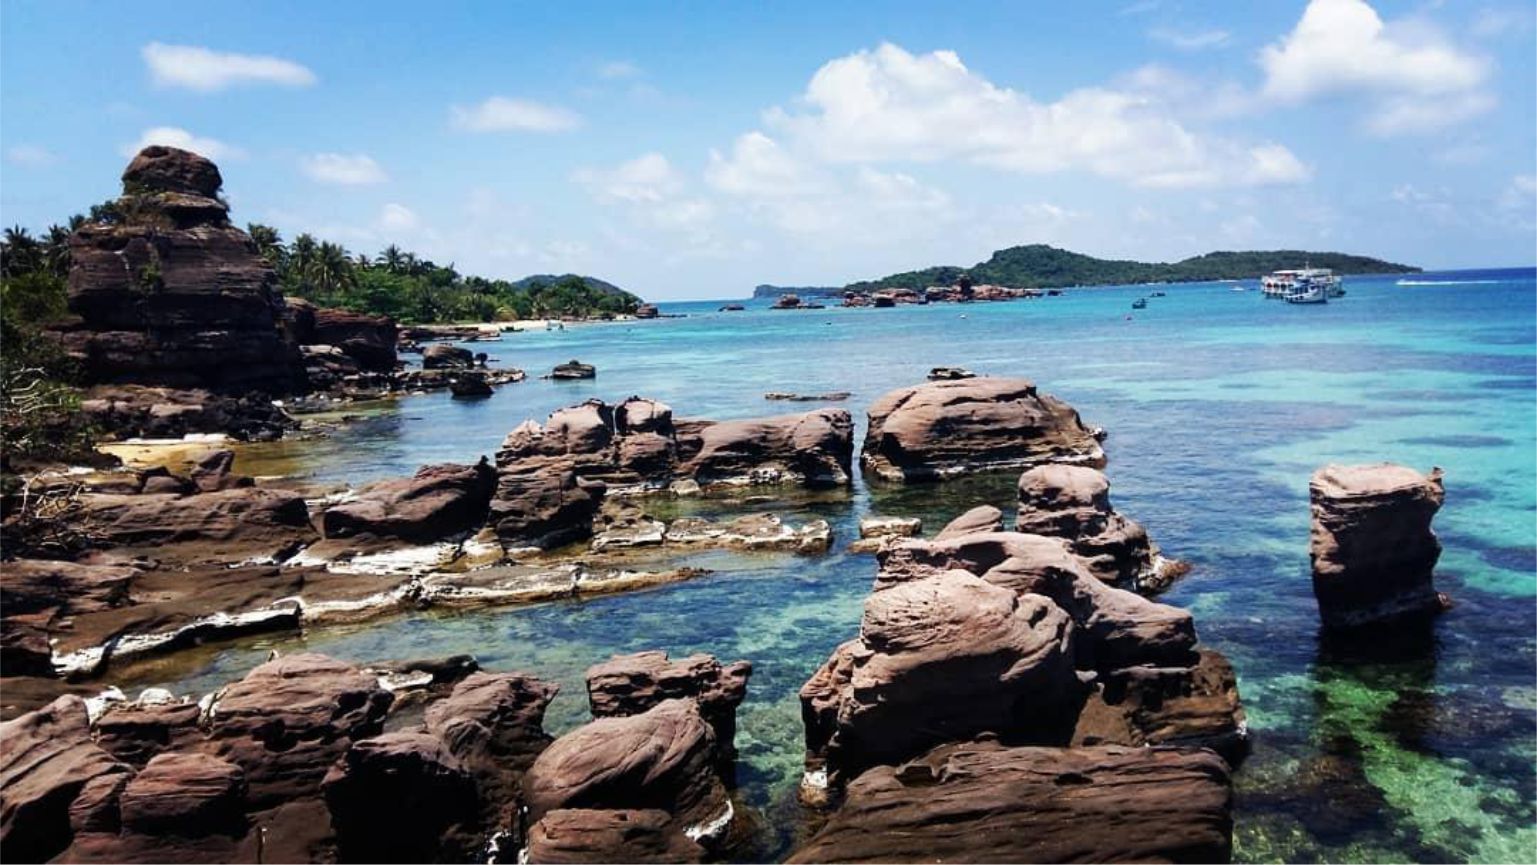 Điểm danh những hòn đảo đẹp như thiên đường du khách không thể bỏ qua trong Tết Âm lịch tại Phú Quốc - Ảnh 5.